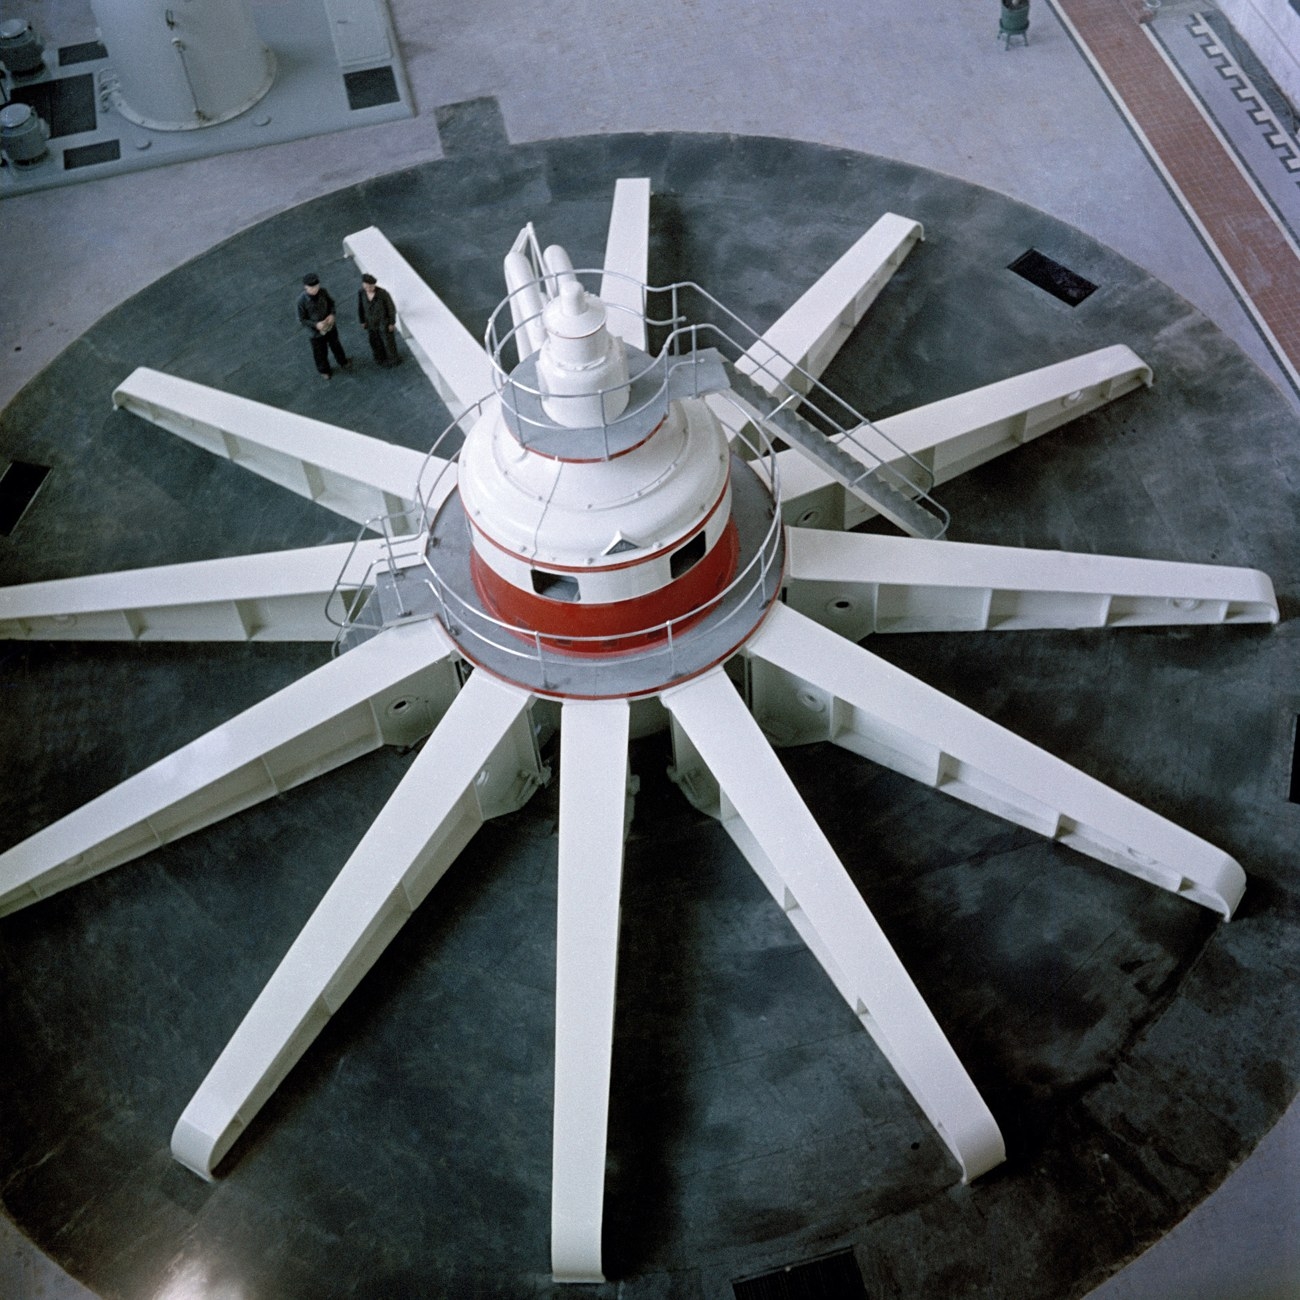 Turbina gigantesca na hidroelétrica de Samara, construída nos anos 1950. Apesar de importante, obras como essa pouco fizeram para melhorar a produtividade da indústria soviética. [via English Russia]